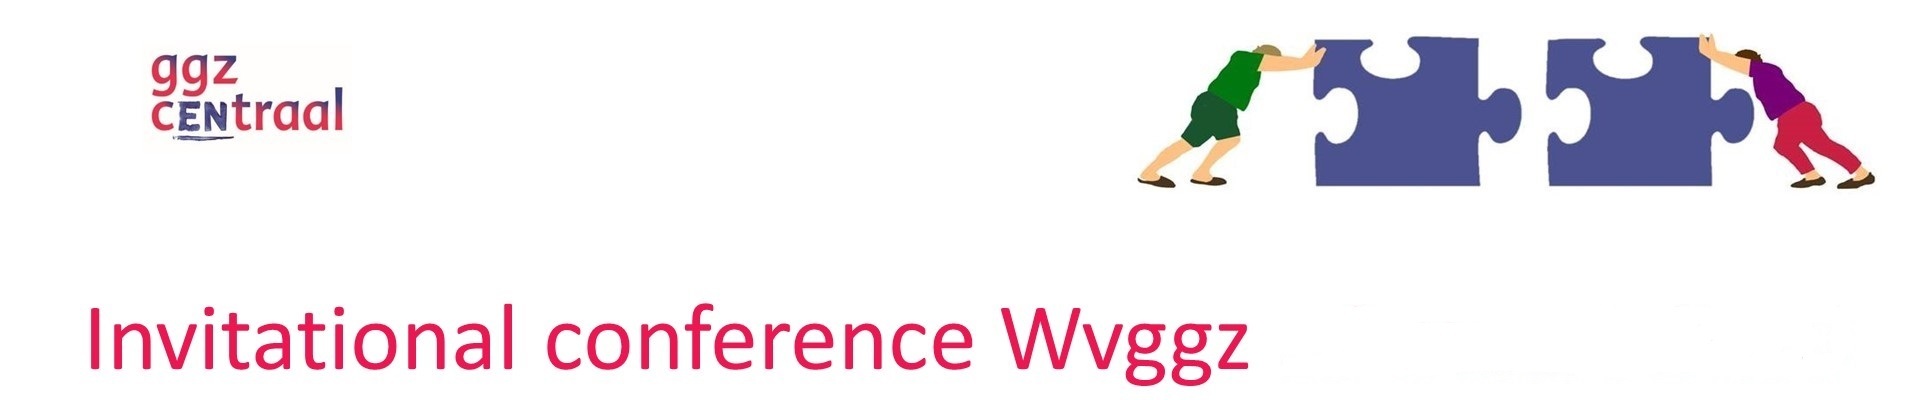 Invitational conference Wvggz 9 juni